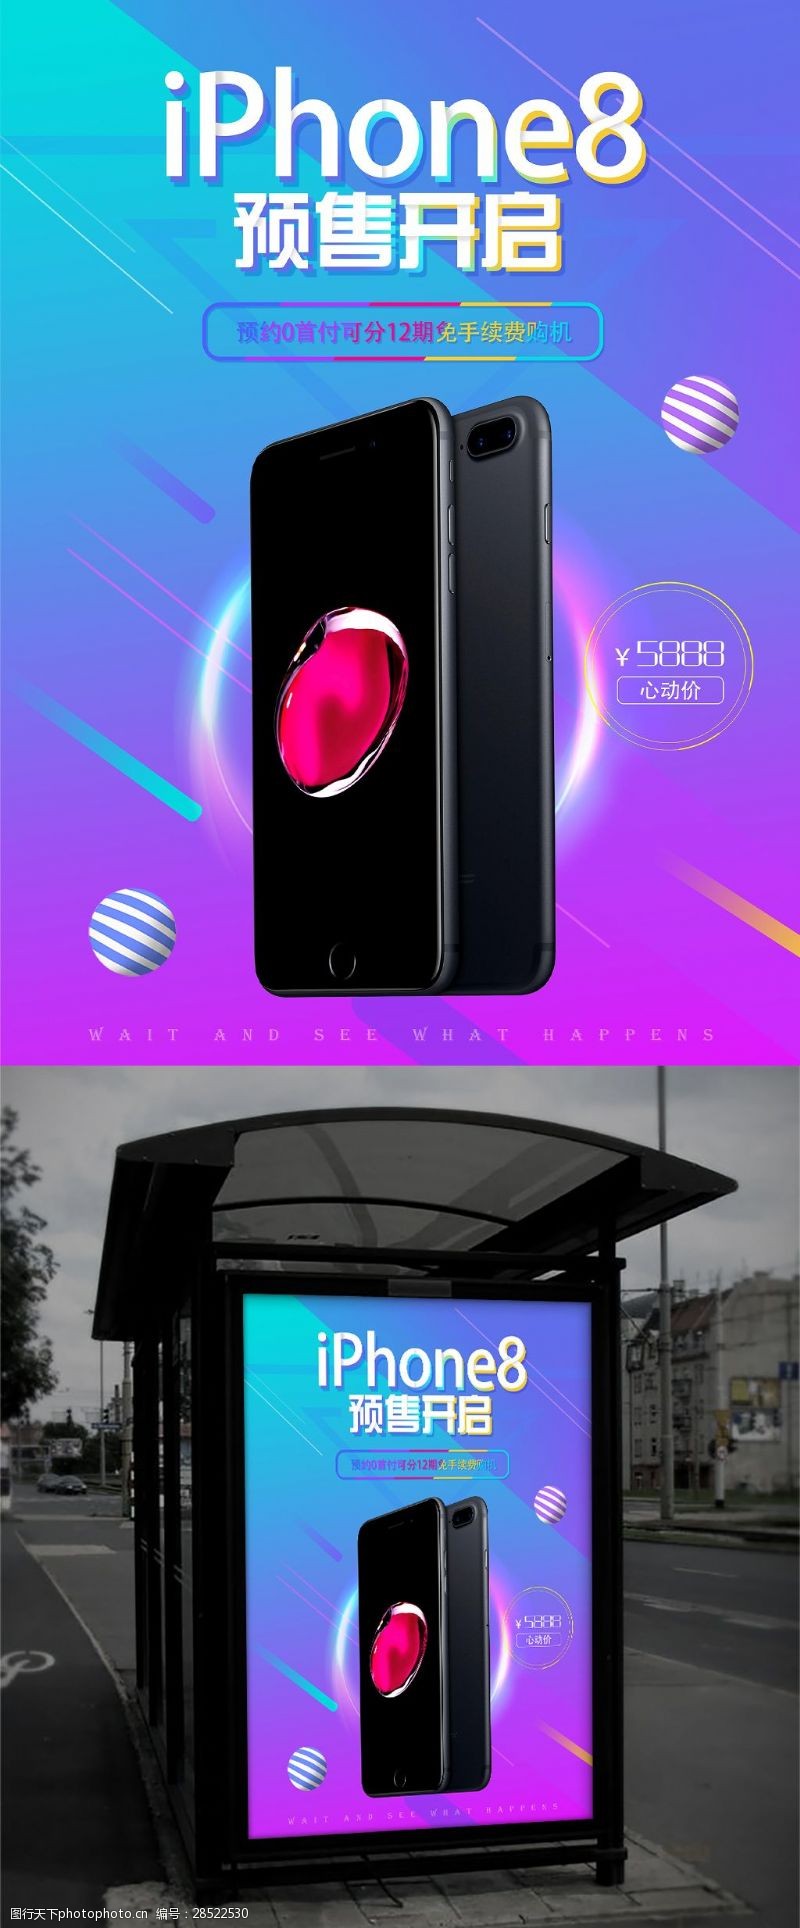 数码产品渐变促销风格iphone8预售海报